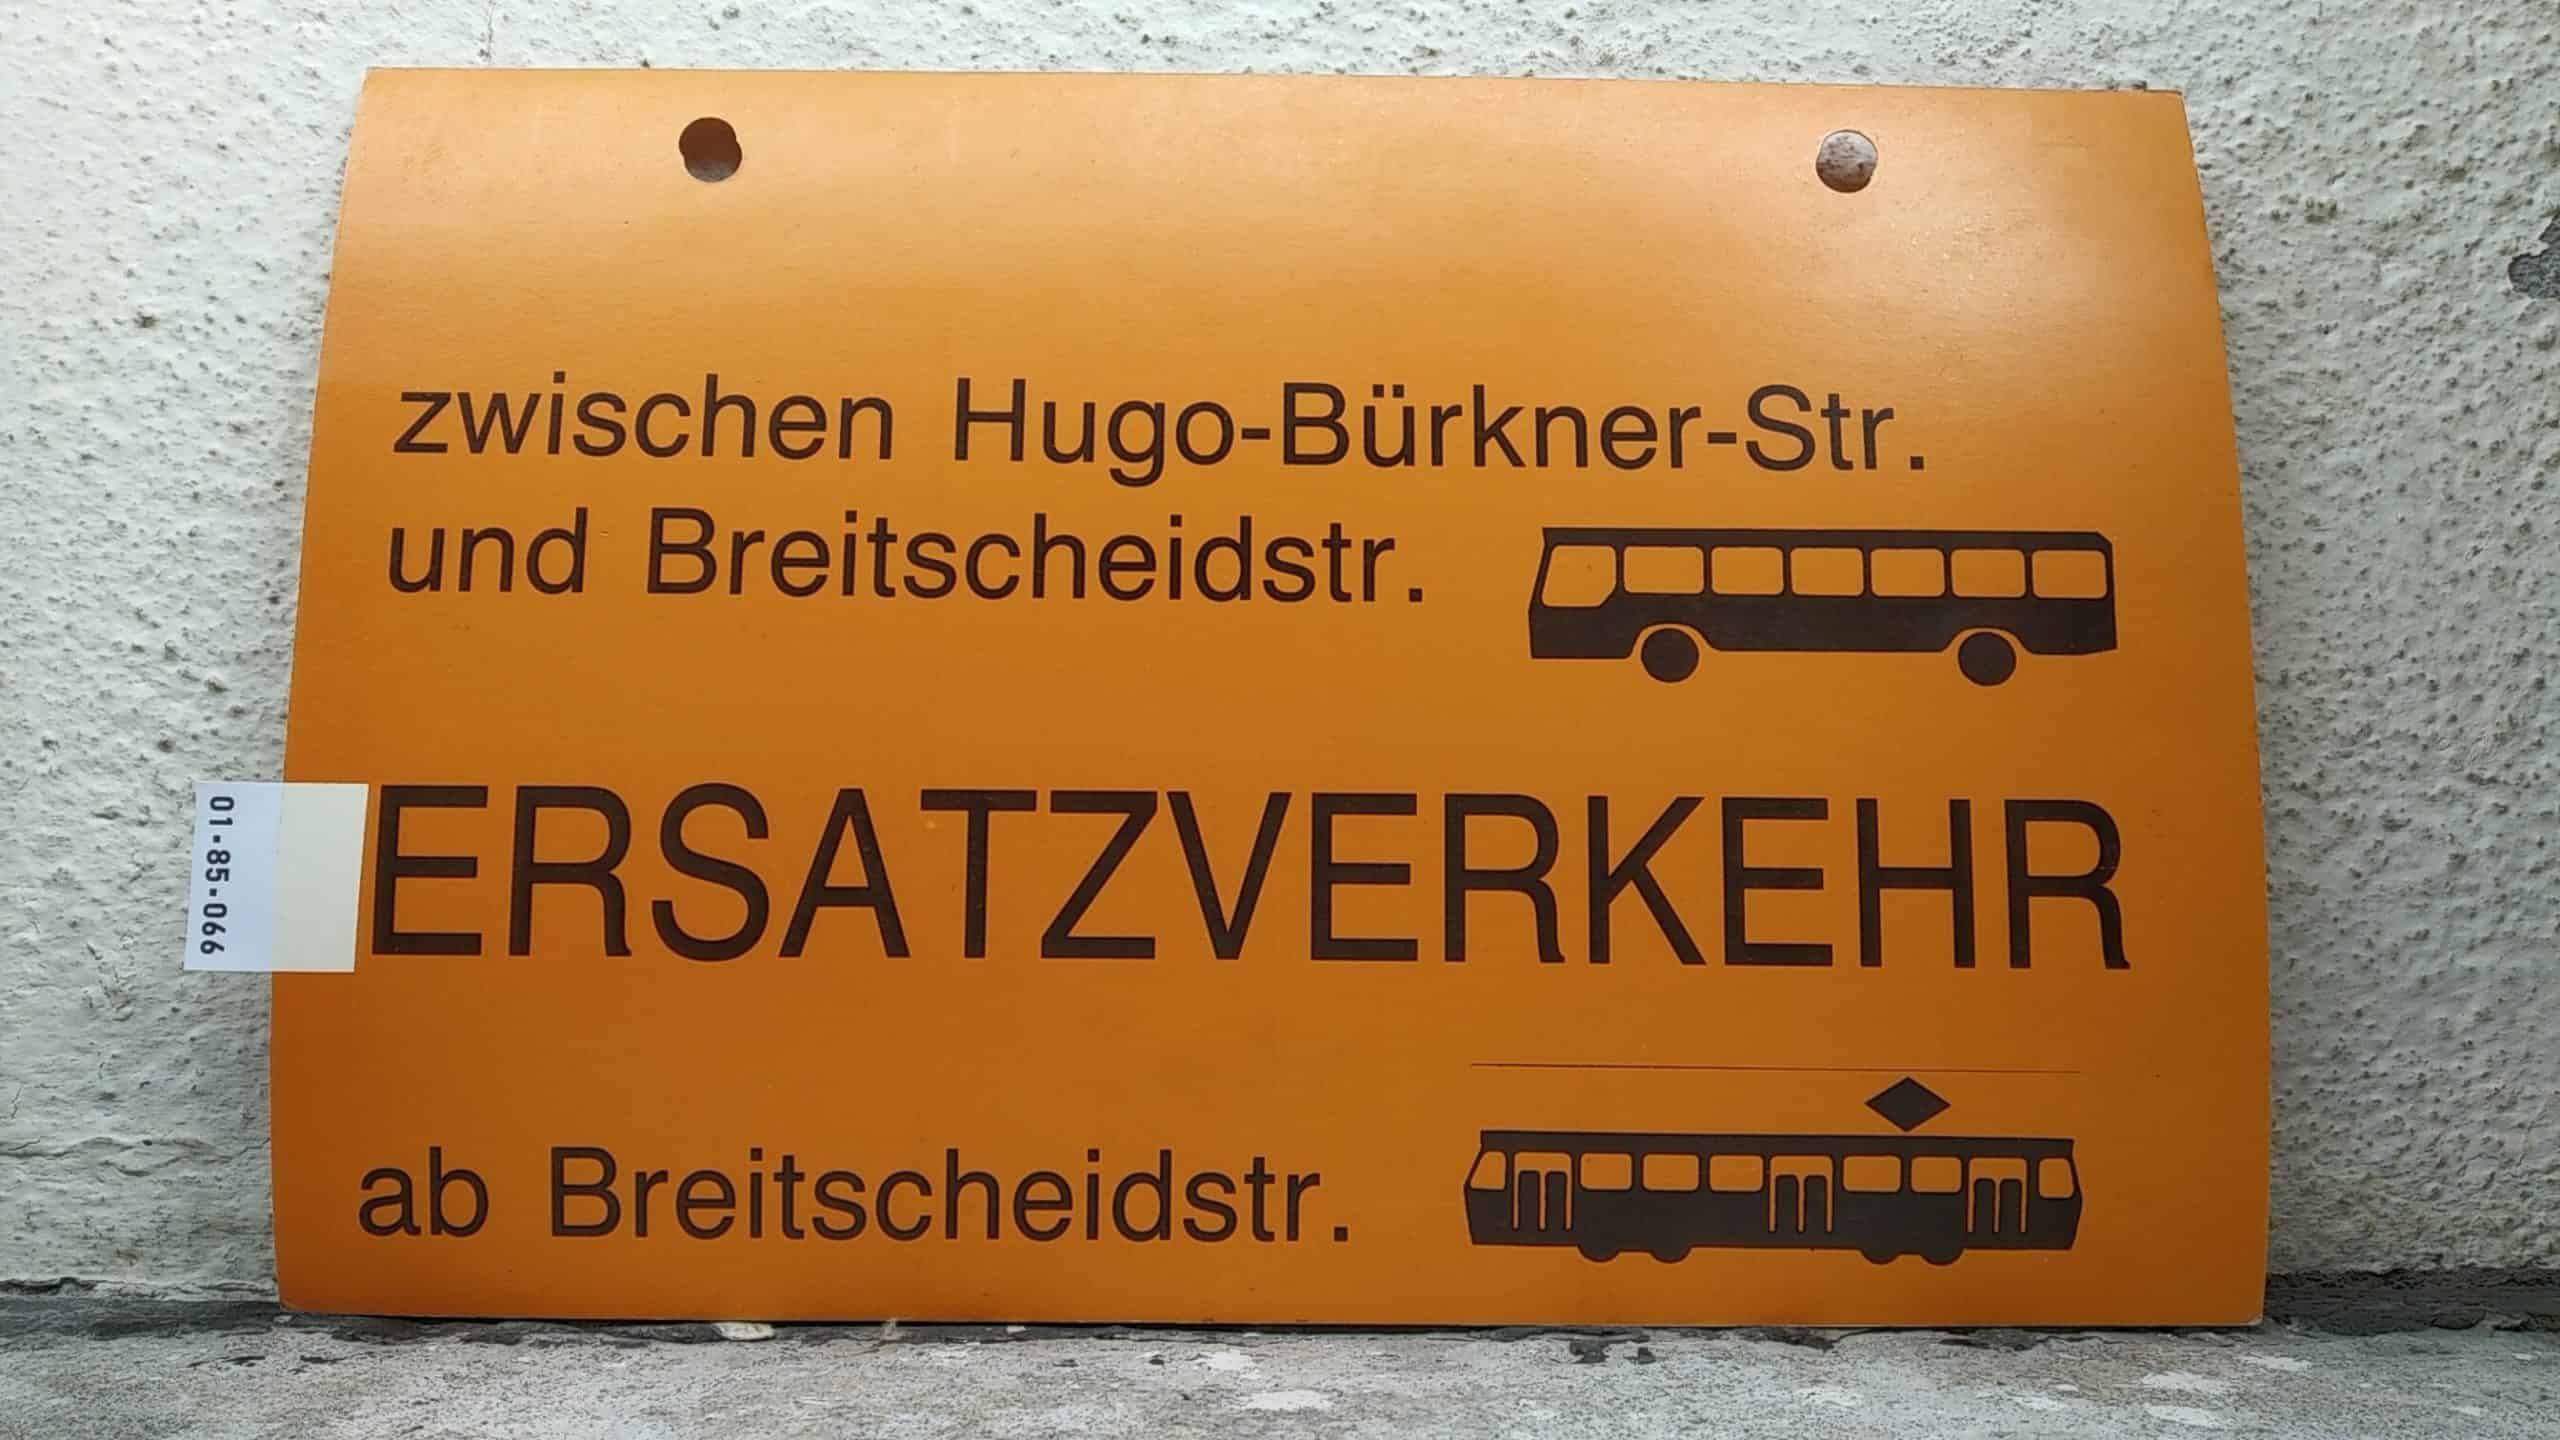 Ein seltenes Straßenbahn-Umleitungsschild aus Dresden: zwischen Hugo-Bürkner-Str. und Breitscheidstr. [Bus neu] ERSATZVERKEHR ab Breitscheidstr. [Tram neu]